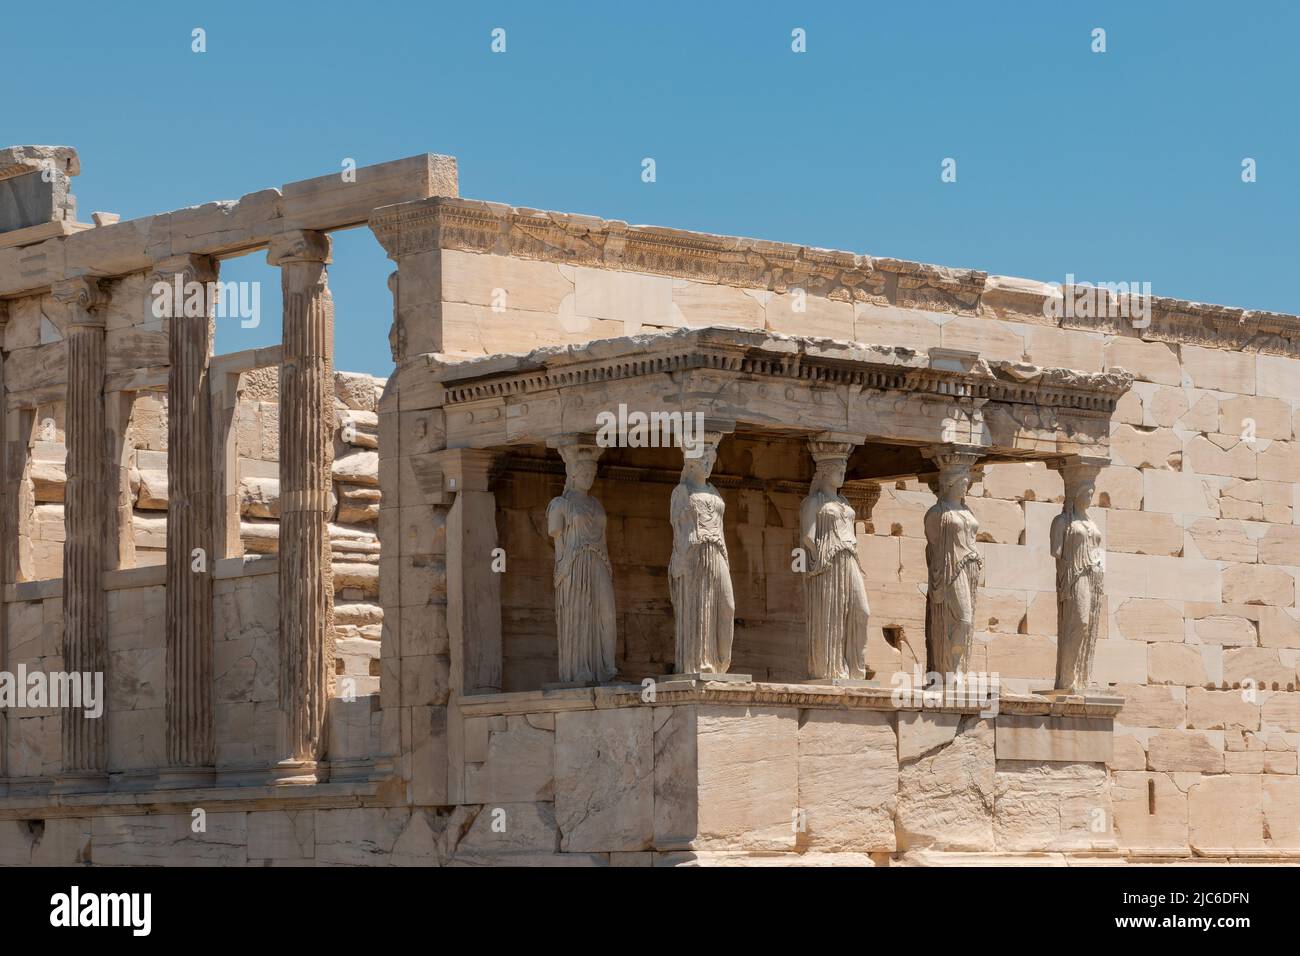 The Erechtheion of the Acropolis, Athens. Stock Photo